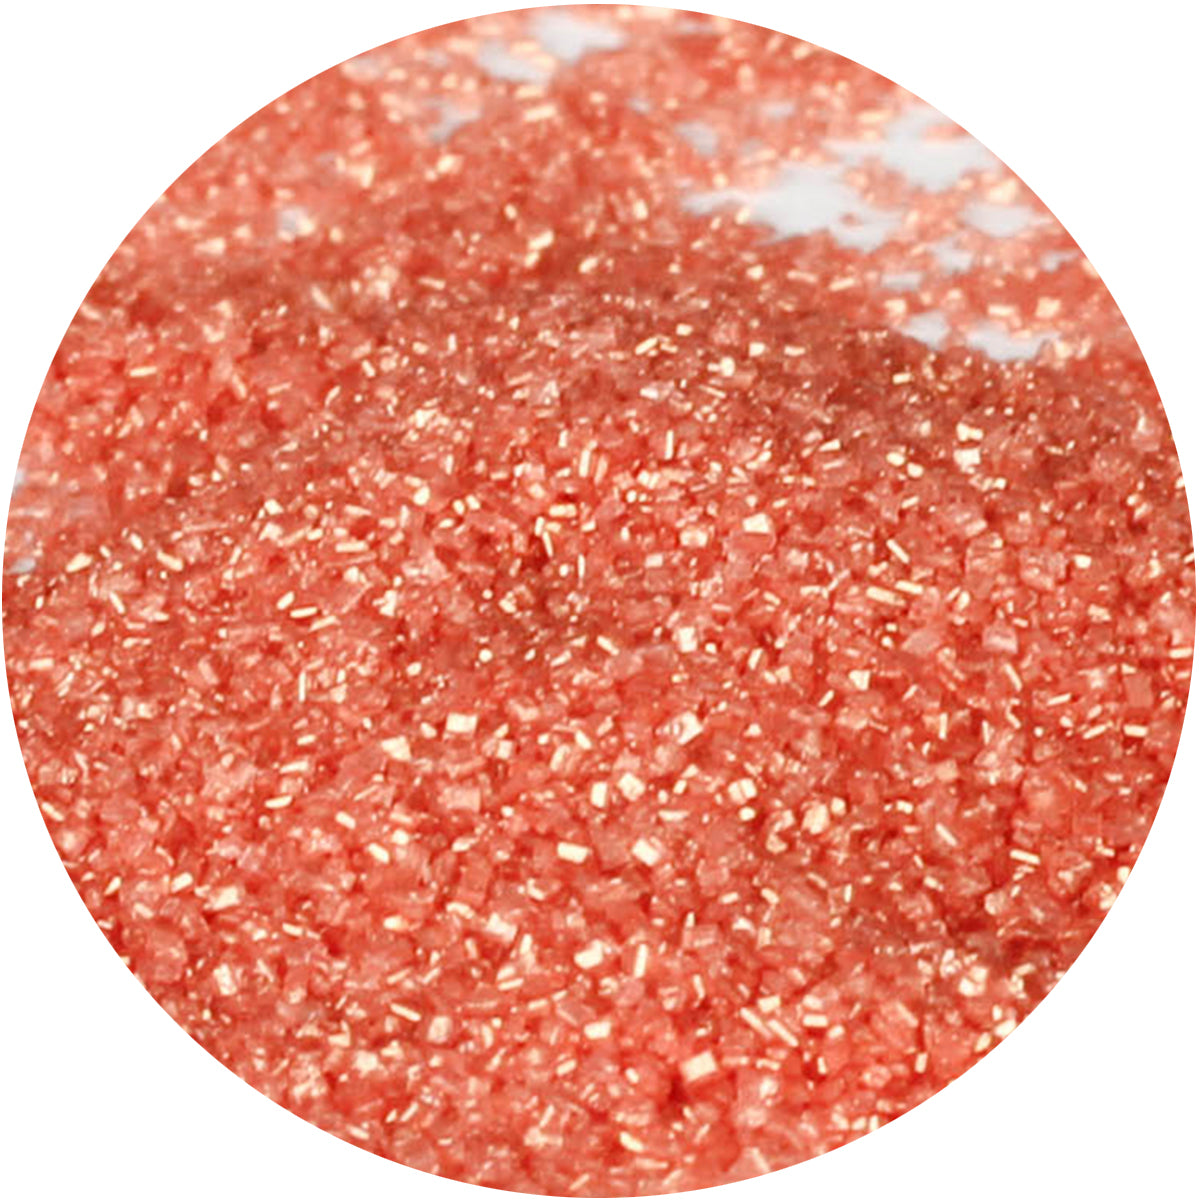 CK Sanding Sugar Shimmering Rose Gold 4oz CK Products Sprinkles - Bake Supply Plus